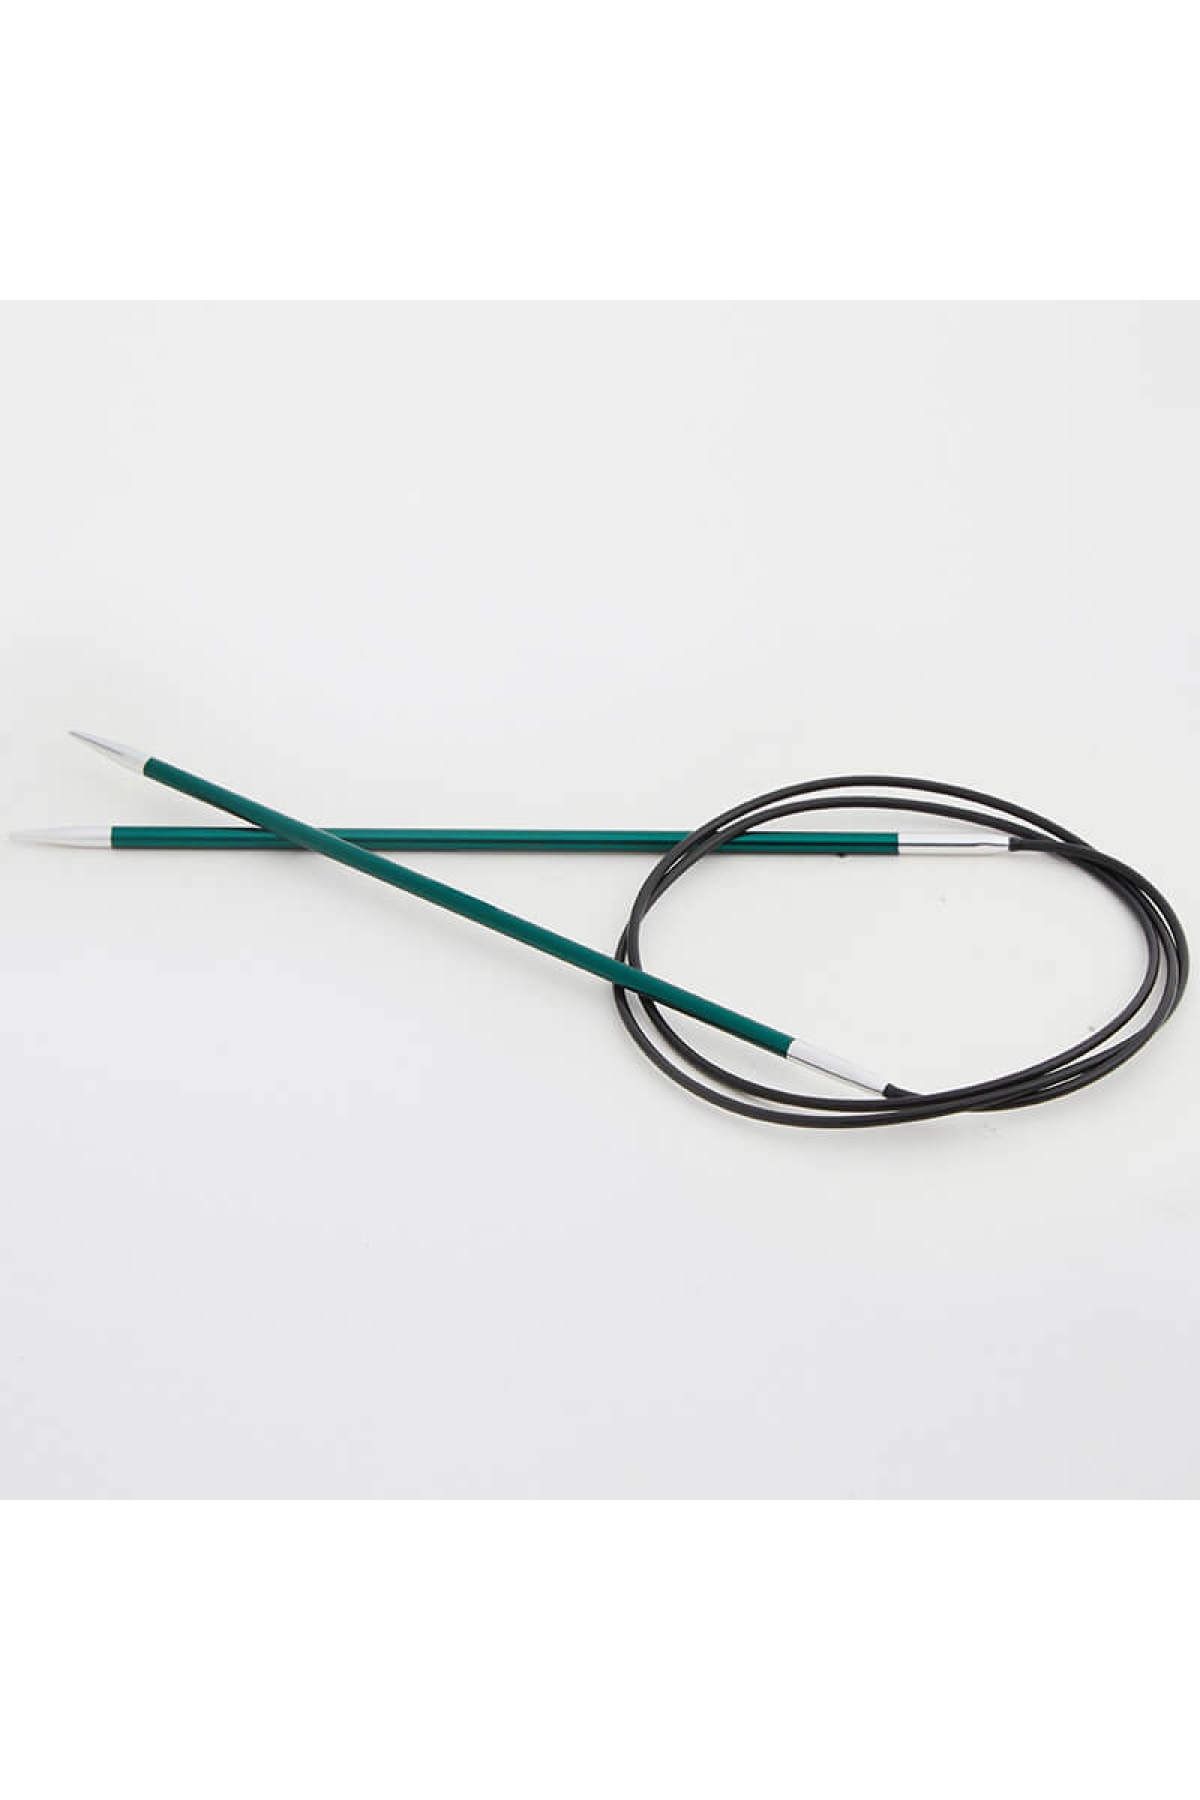 Knitpro Zing Sabit Misinalı Şiş 40cm / 3,00mm